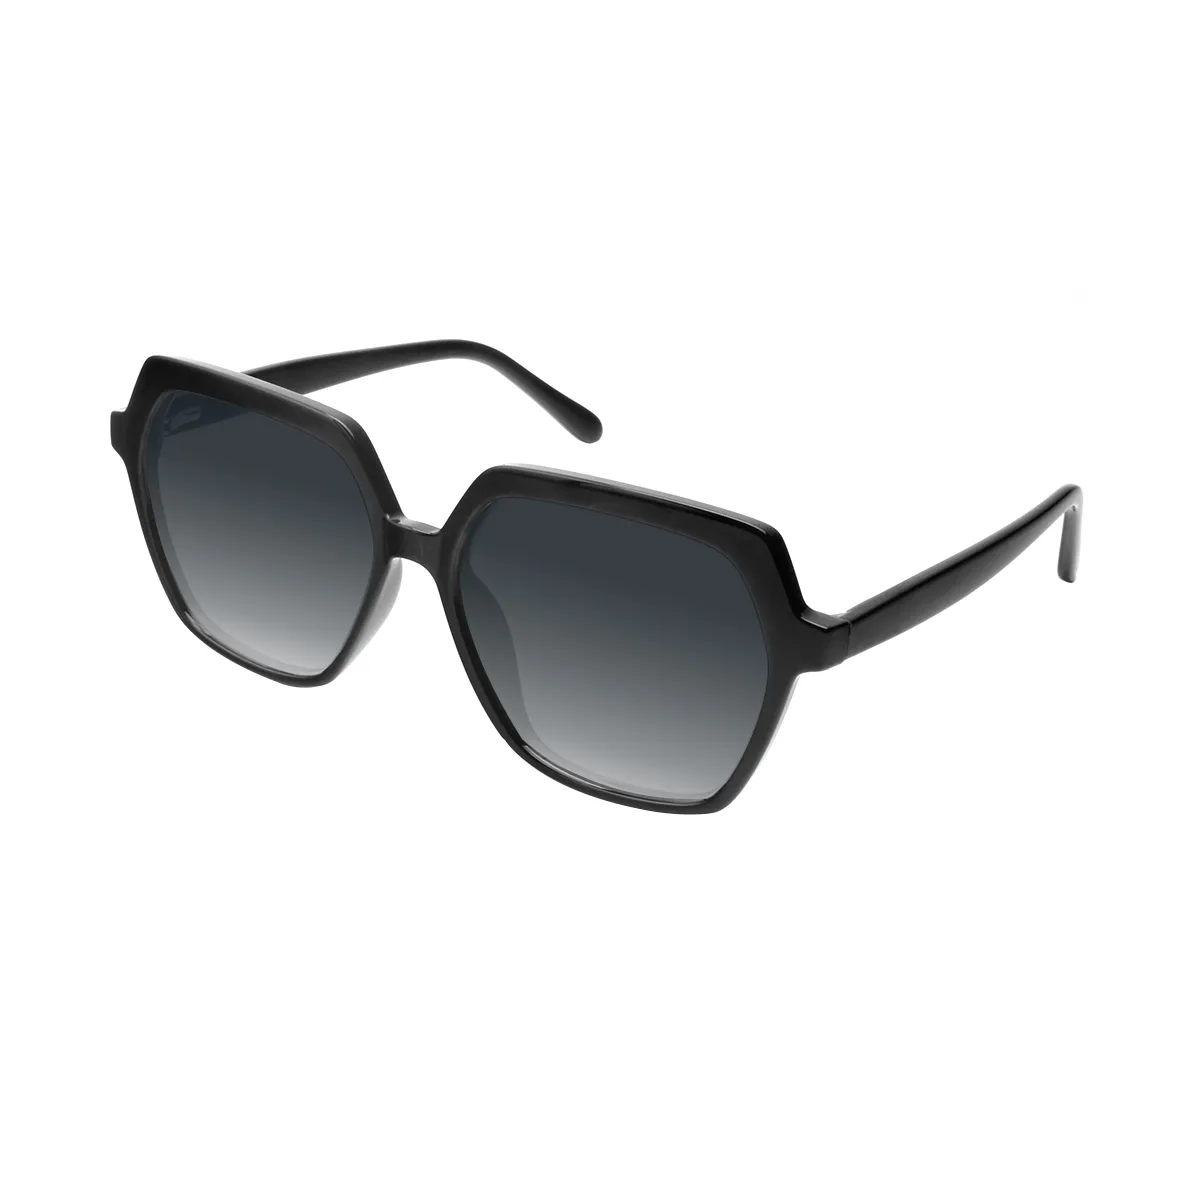 Faulkner - Square Black Sunglasses for Women